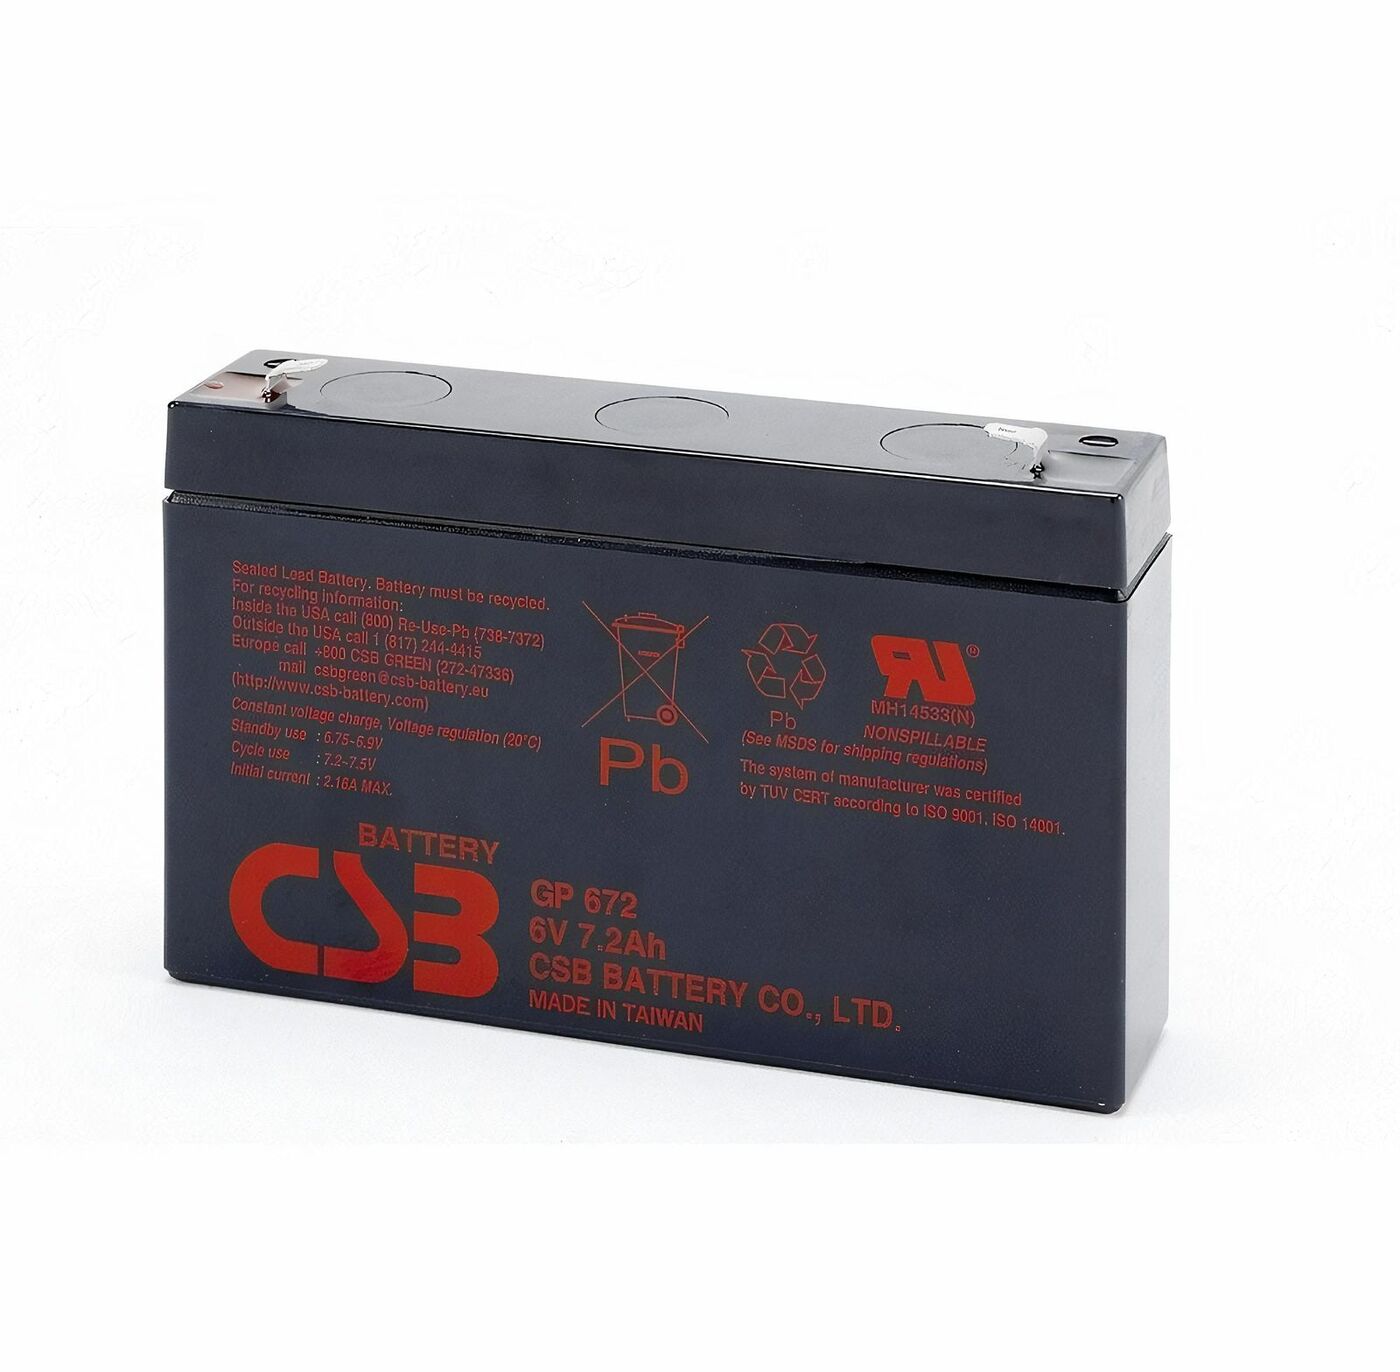 Свинцово-кислотный аккумулятор CSB GP672 6В 7.2Aч 247 свинцово кислотный аккумулятор csb gp 1272 f2 12v 7 2ah 8604